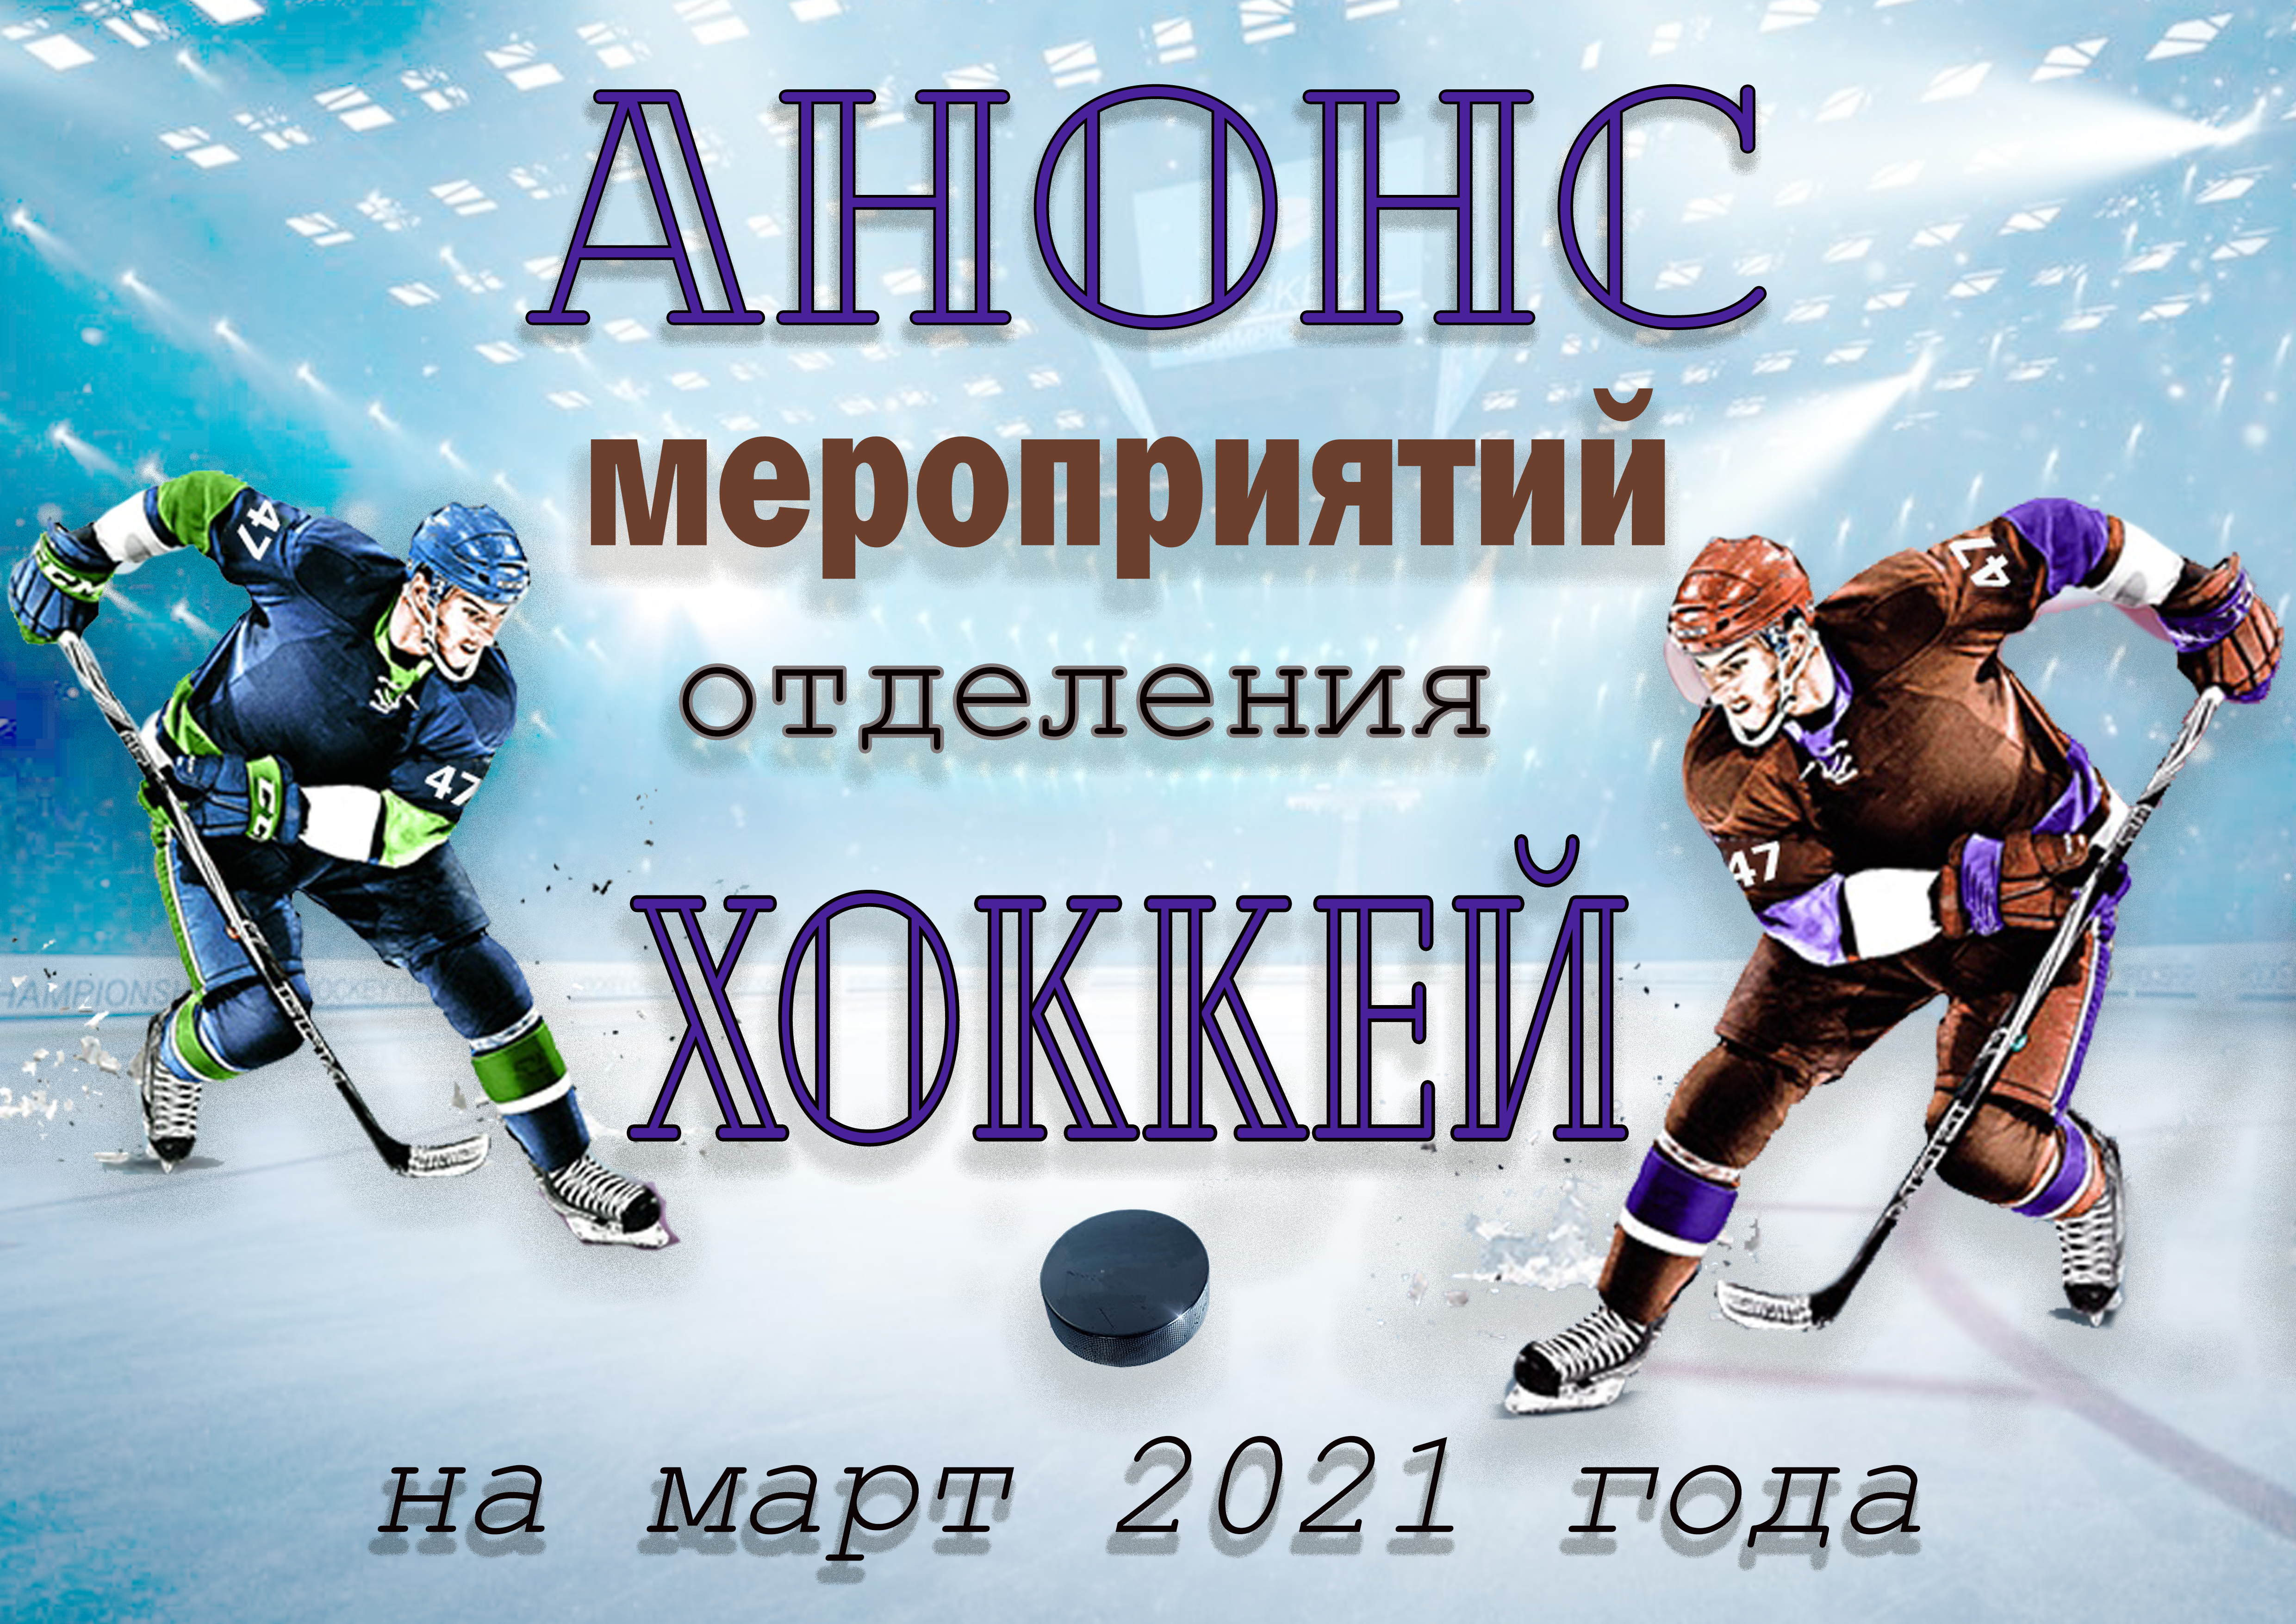 Представляем вам анонс спортивных мероприятий отделения хоккей на март 2021 года